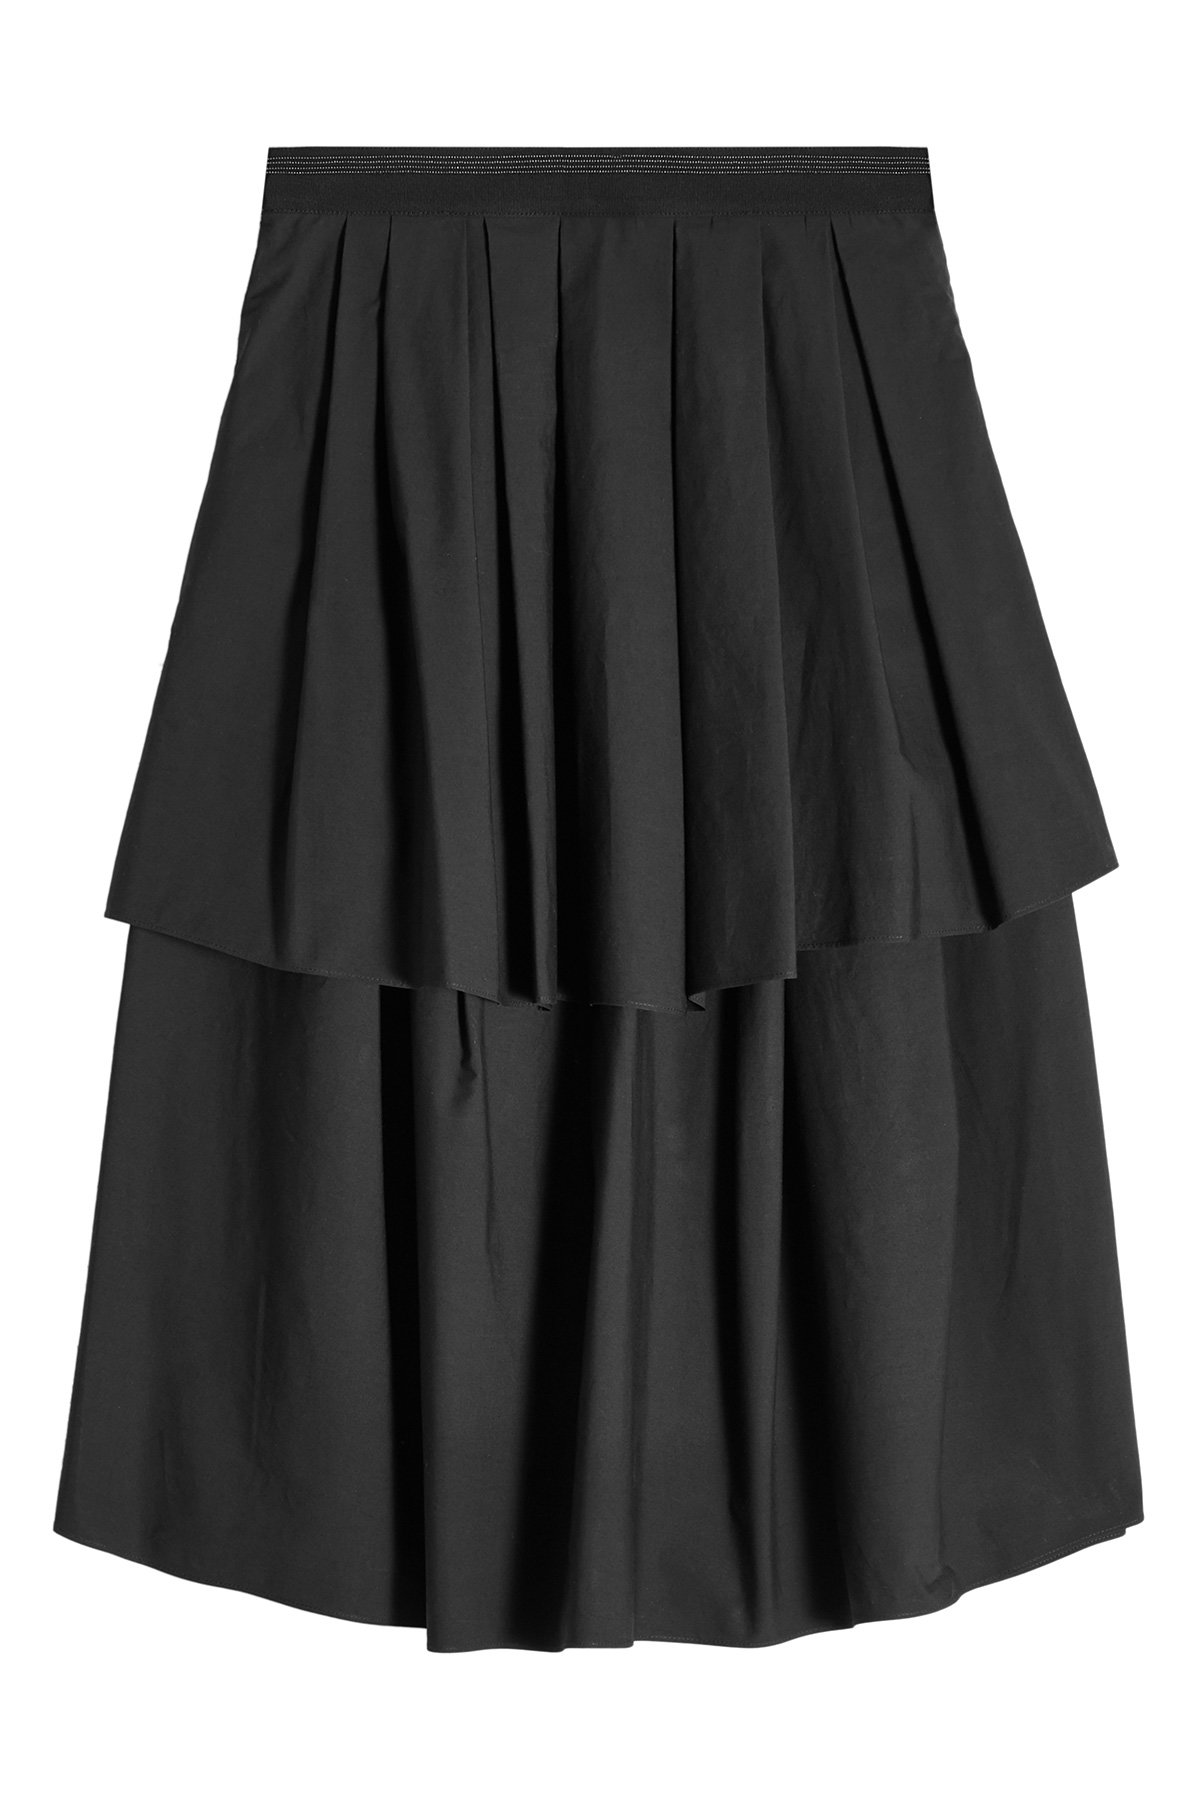 Brunello Cucinelli - Tiered Cotton Skirt